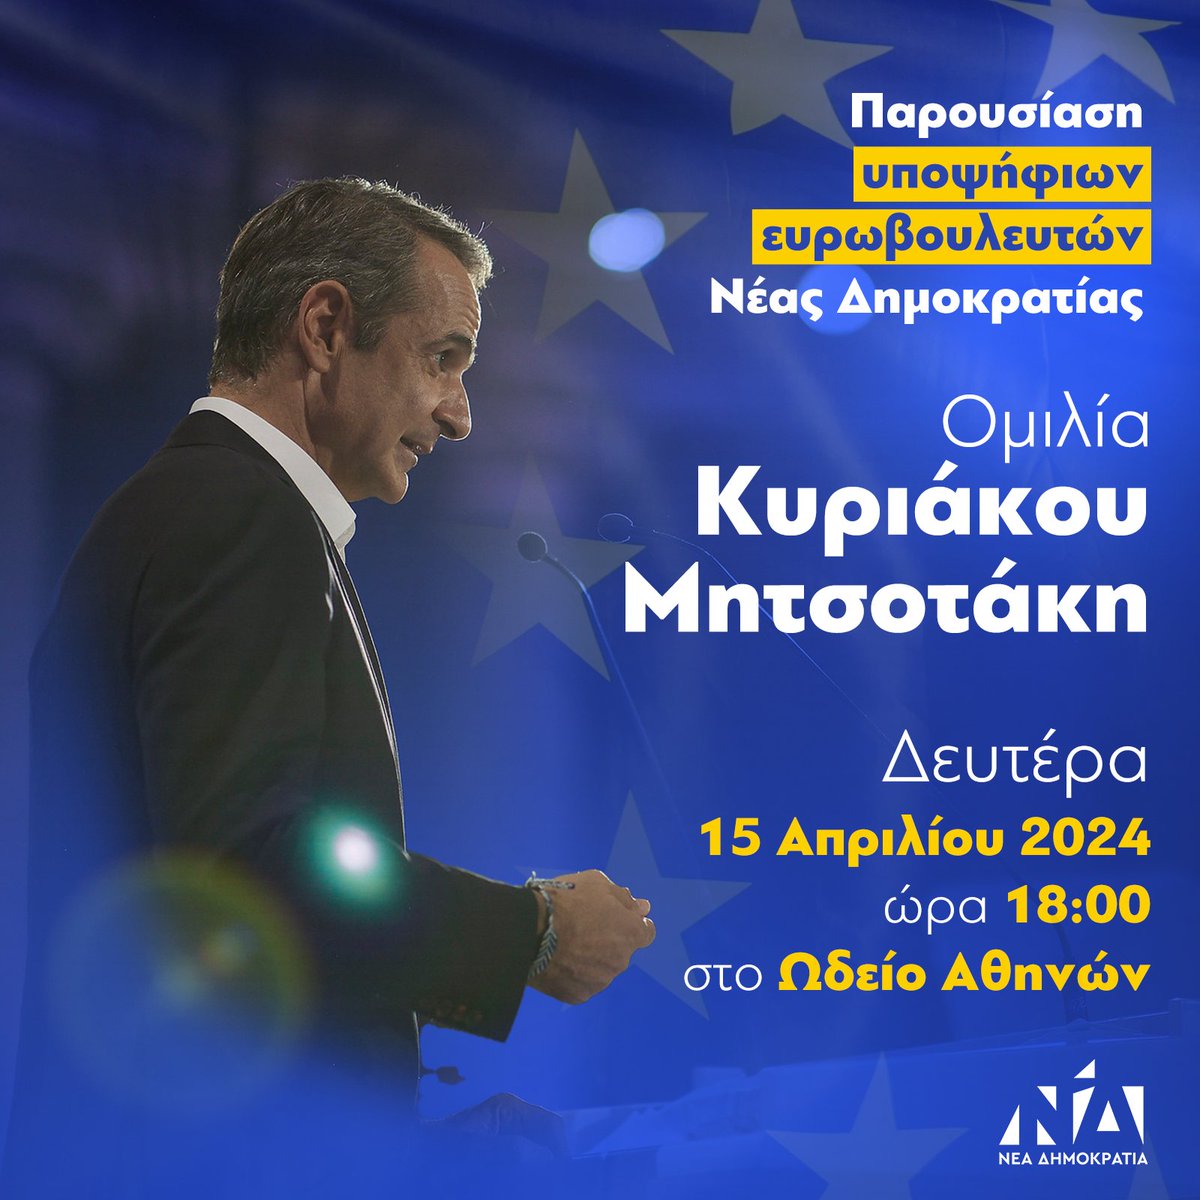 Ομιλία Κυριάκου Μητσοτάκη στην παρουσίαση των υποψήφιων Ευρωβουλευτών της Νέας Δημοκρατίας, τη Δευτέρα 15 Απριλίου στο Ωδείο Αθηνών.